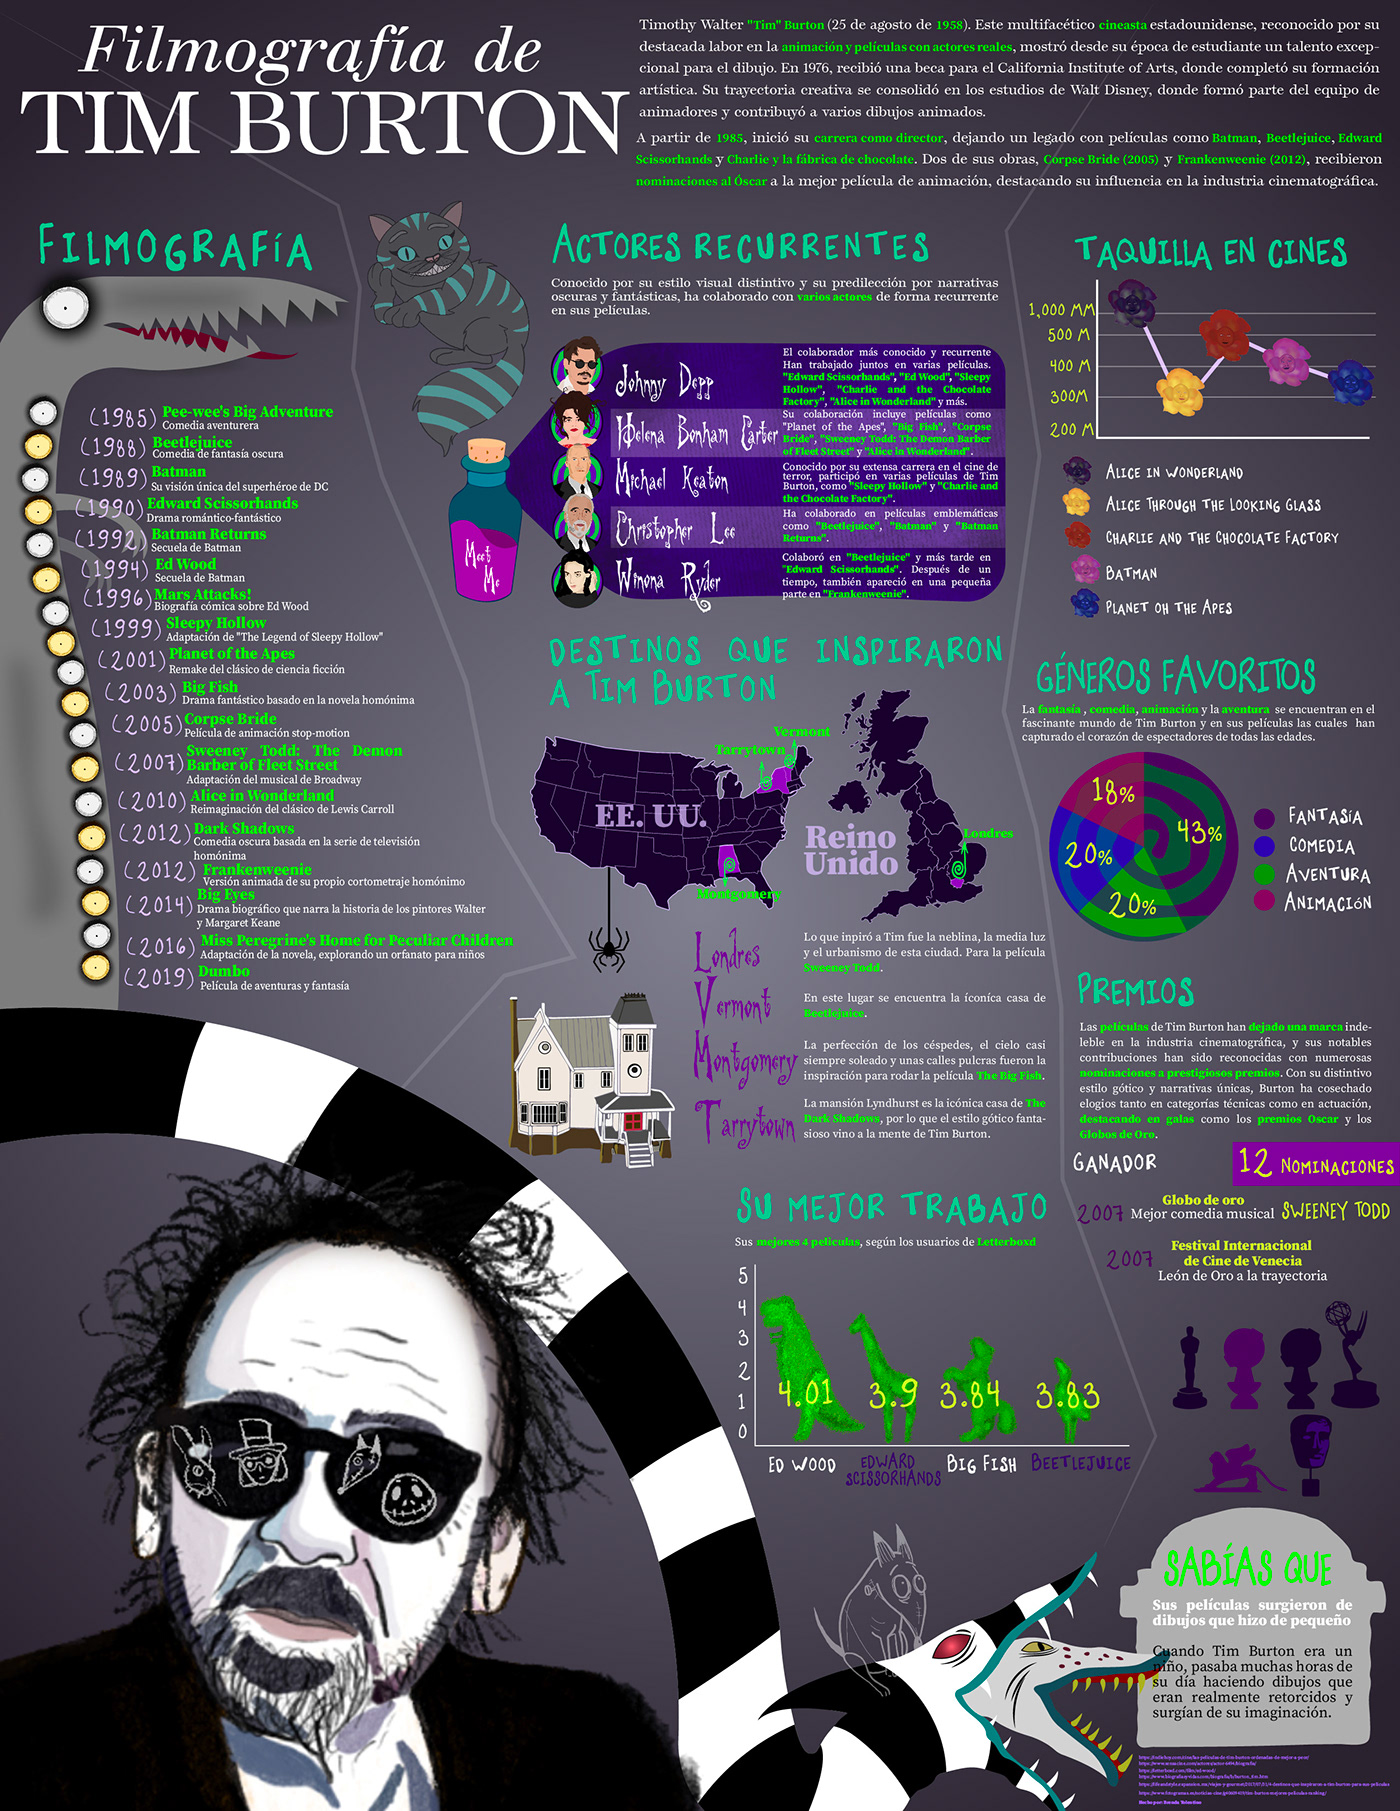 infographic Tim Burton peliculas